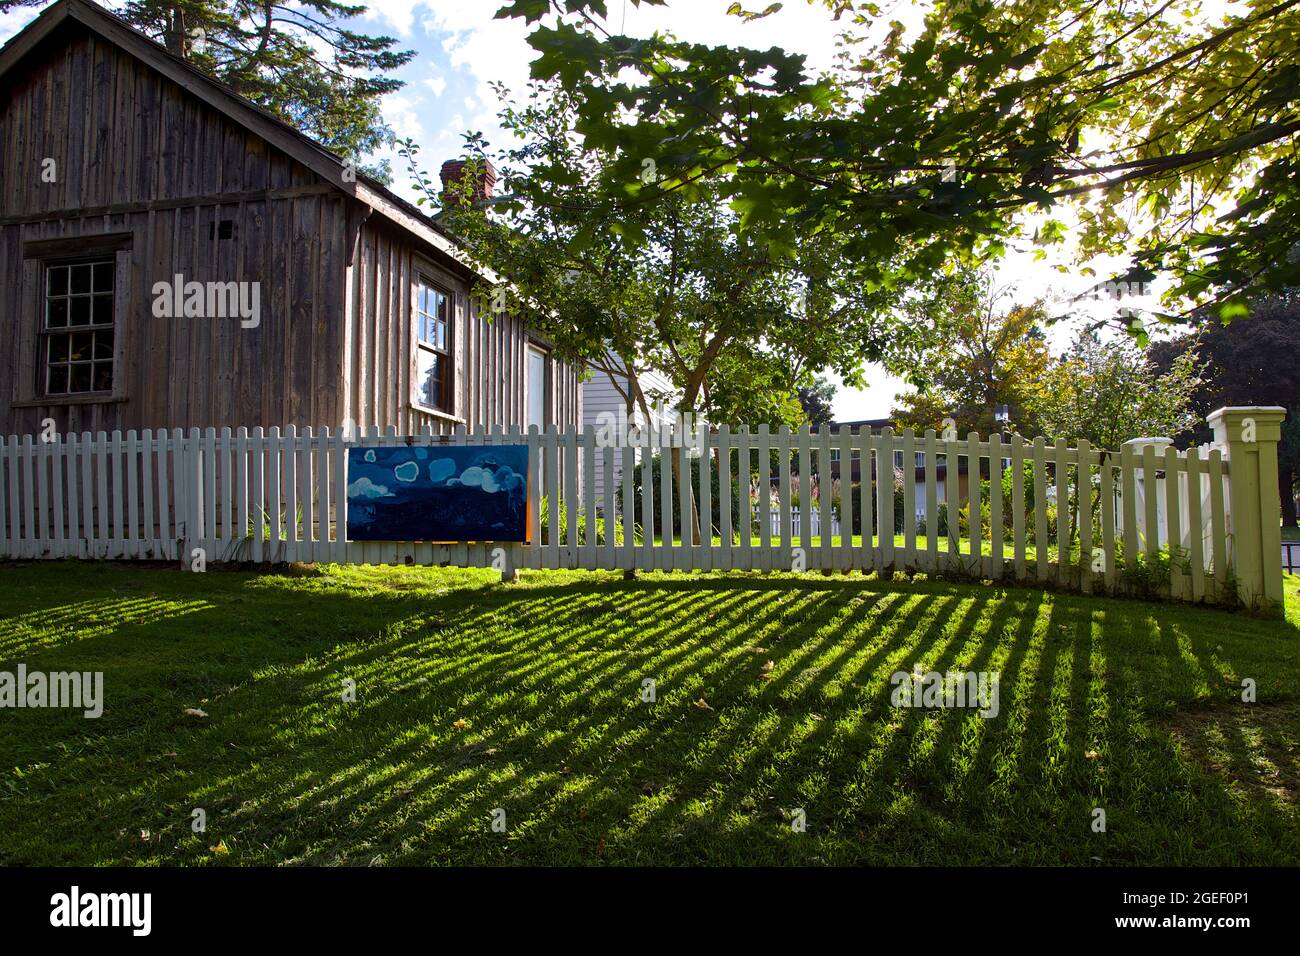 Toronto, Ontario / Canada - 12 septembre 2014 : ancienne maison de grange avec une clôture de piquetage blanche. Banque D'Images